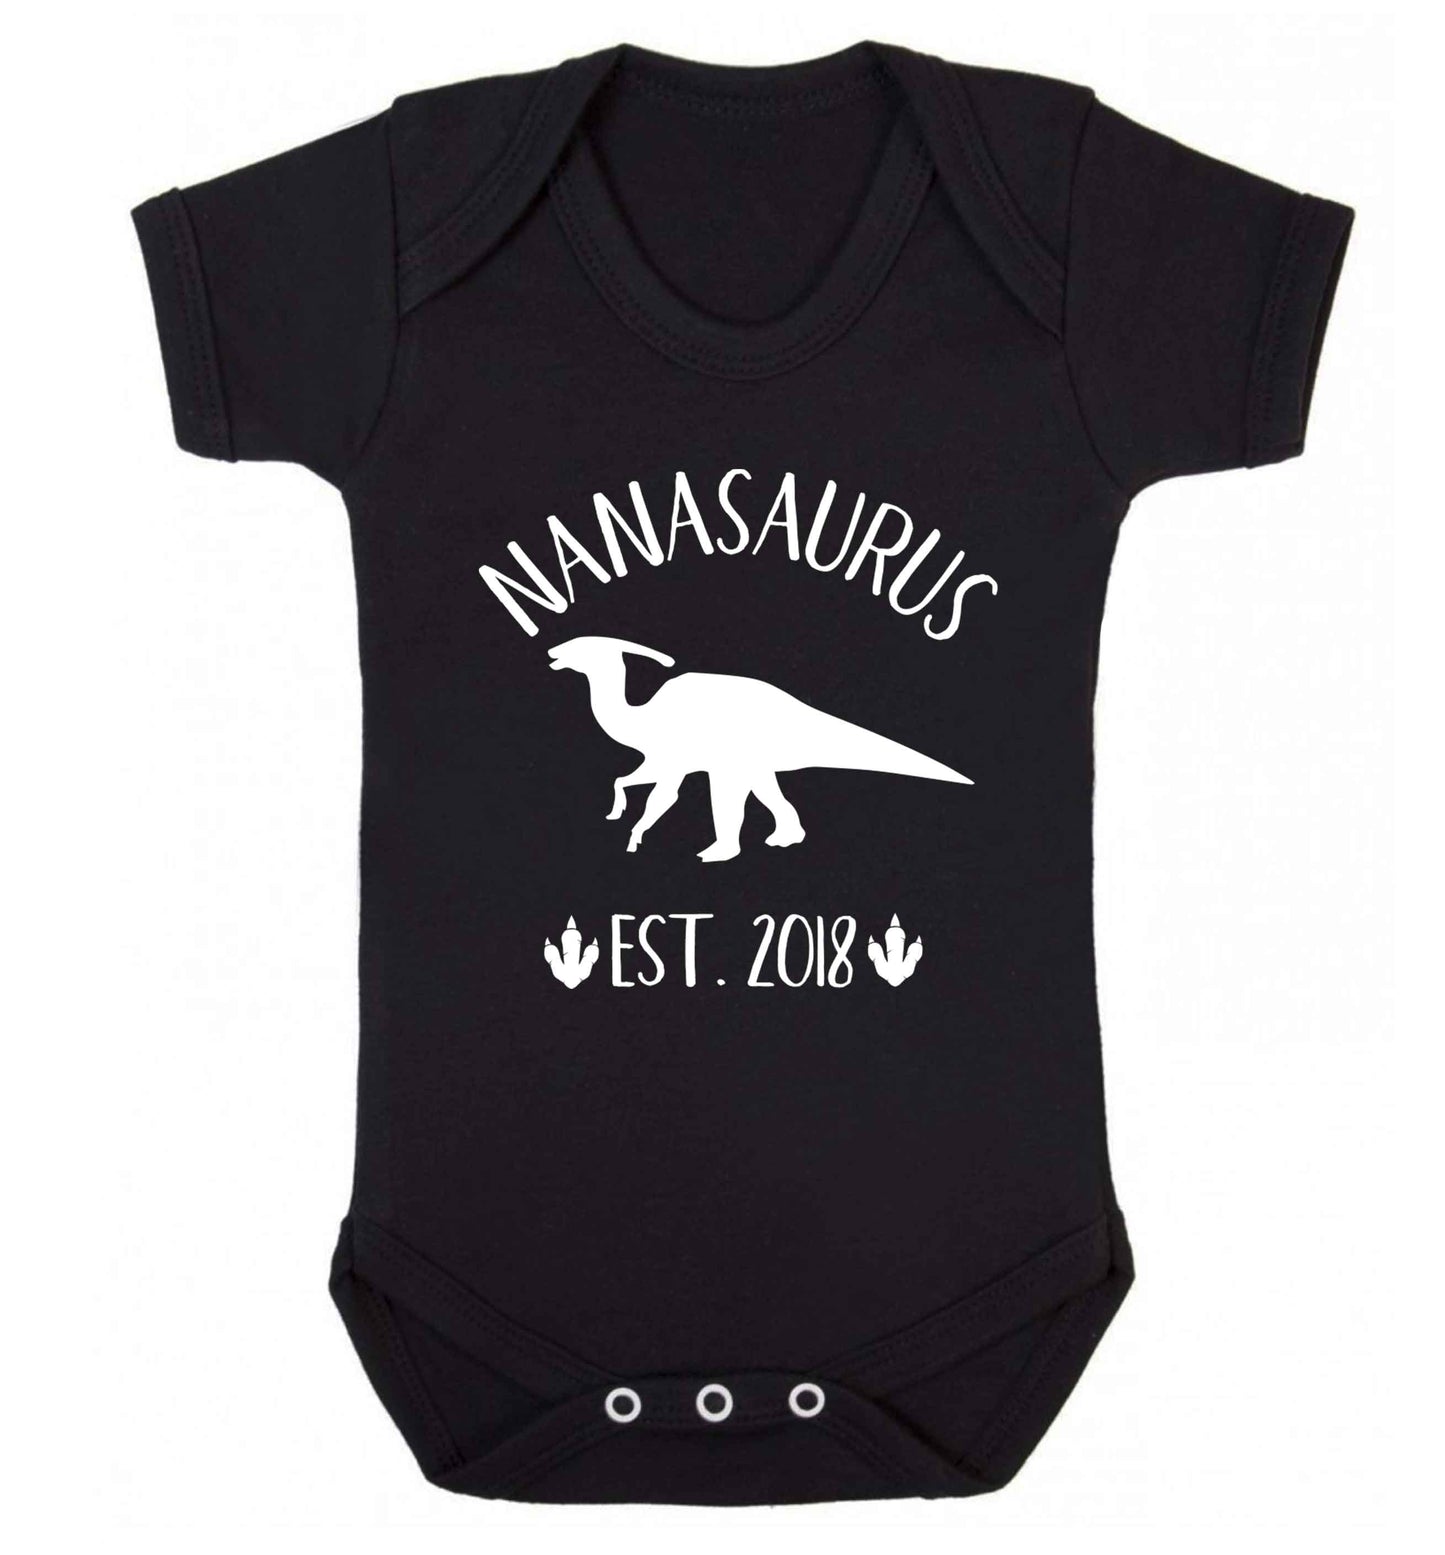 Personalised nanasaurus since (custom date) Baby Vest black 18-24 months